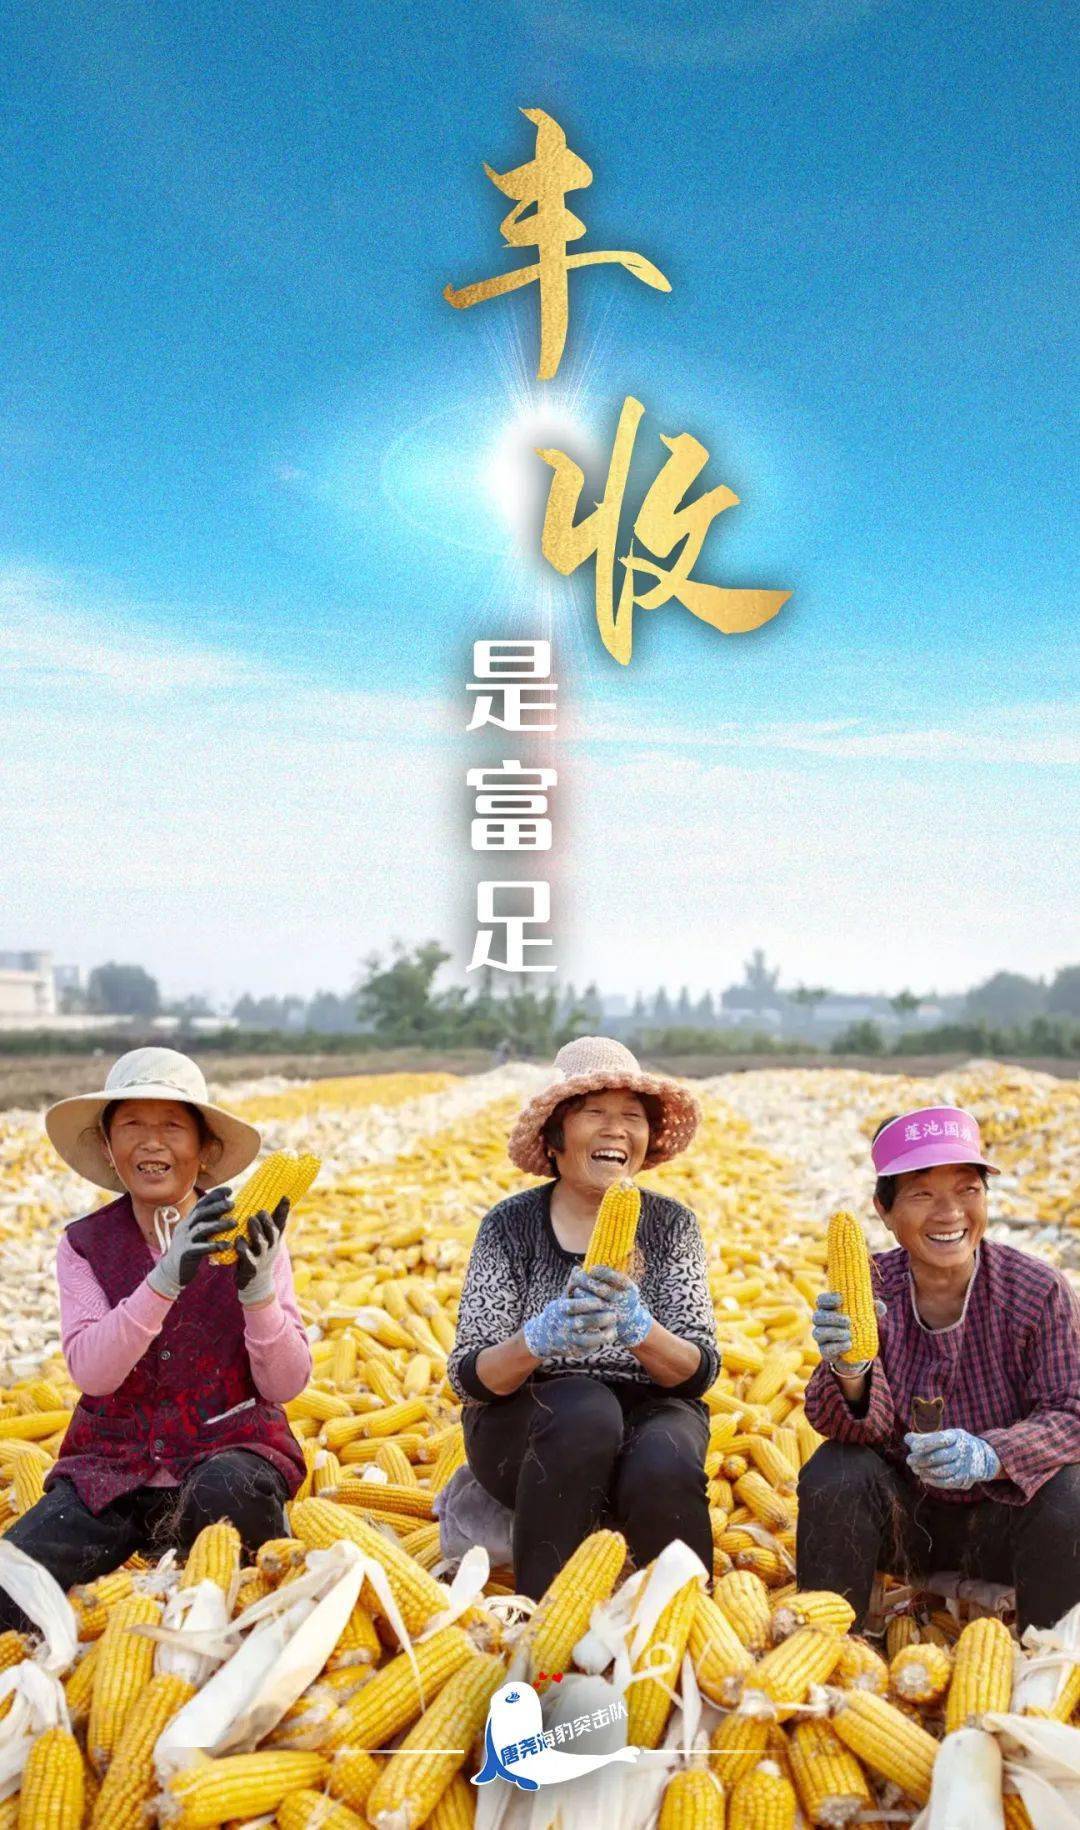 中国农民丰收节海报喜笑颜开迎丰收